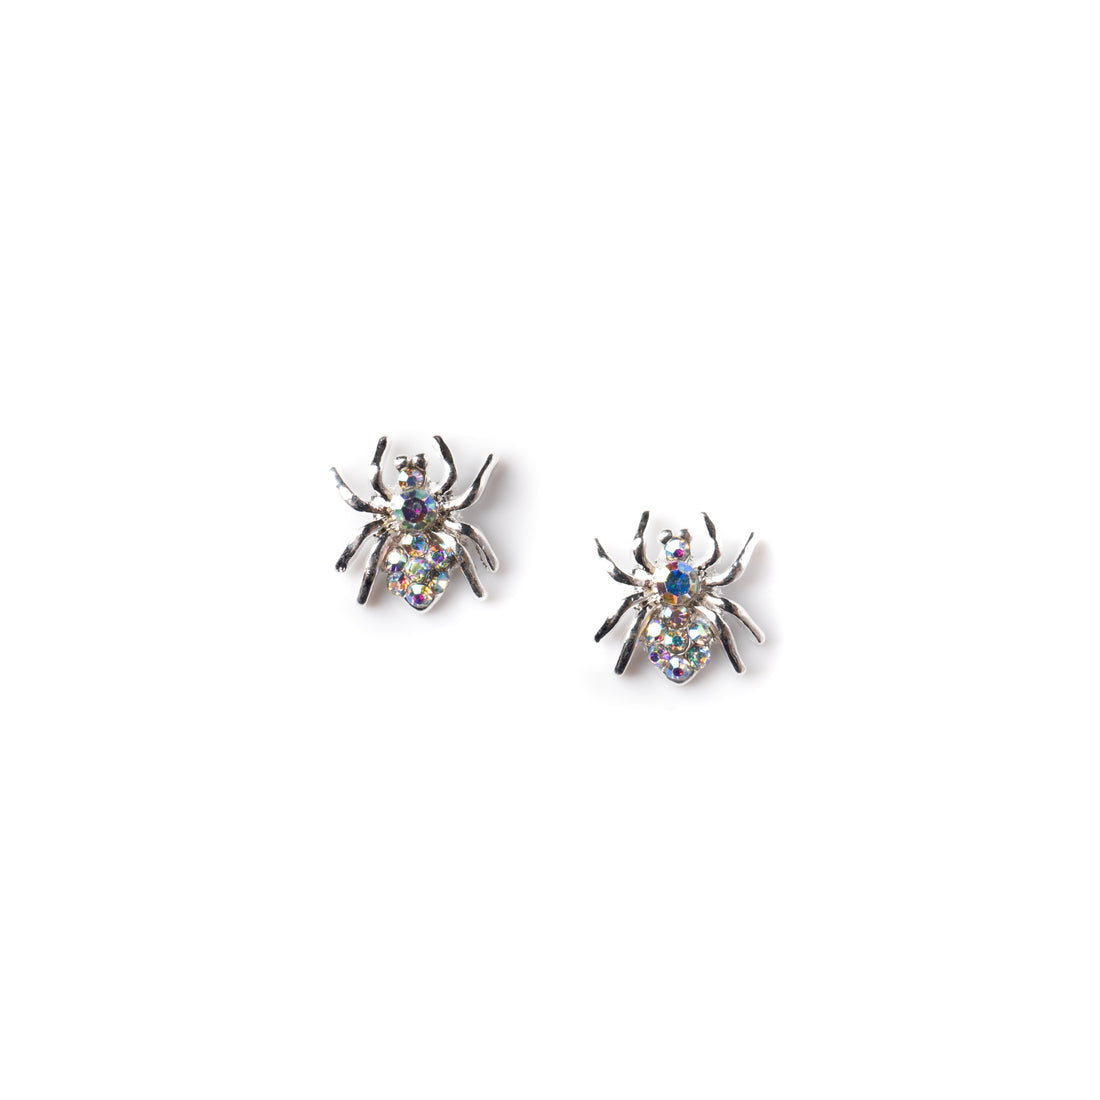 Silver W/ Crystal AB Spider Charm